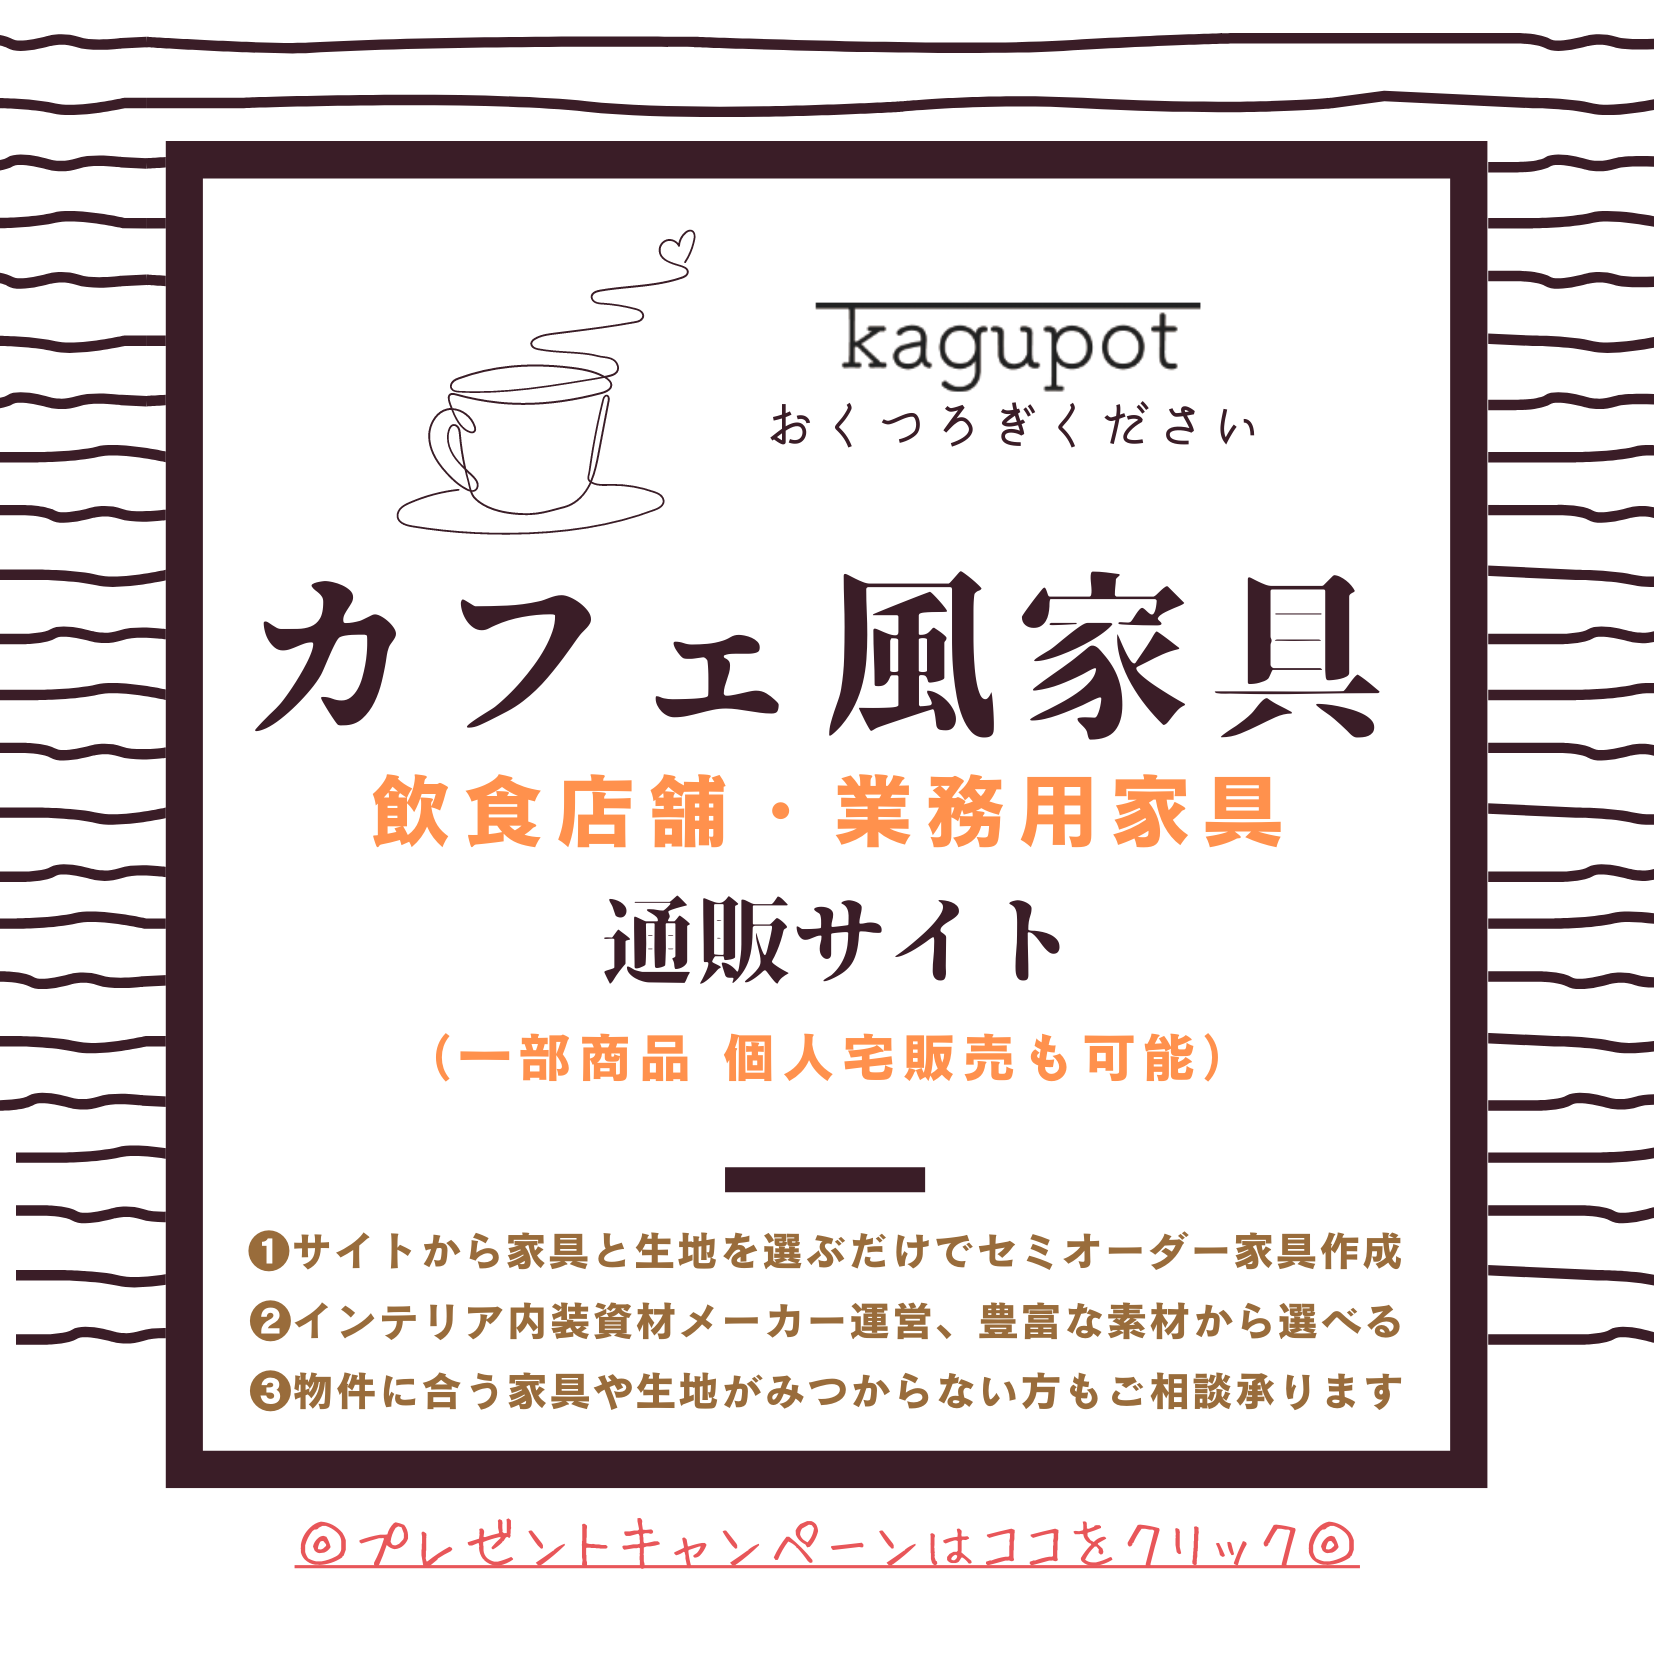 カフェ用家具・業務用家具の専門店 kagupot(カグポット)